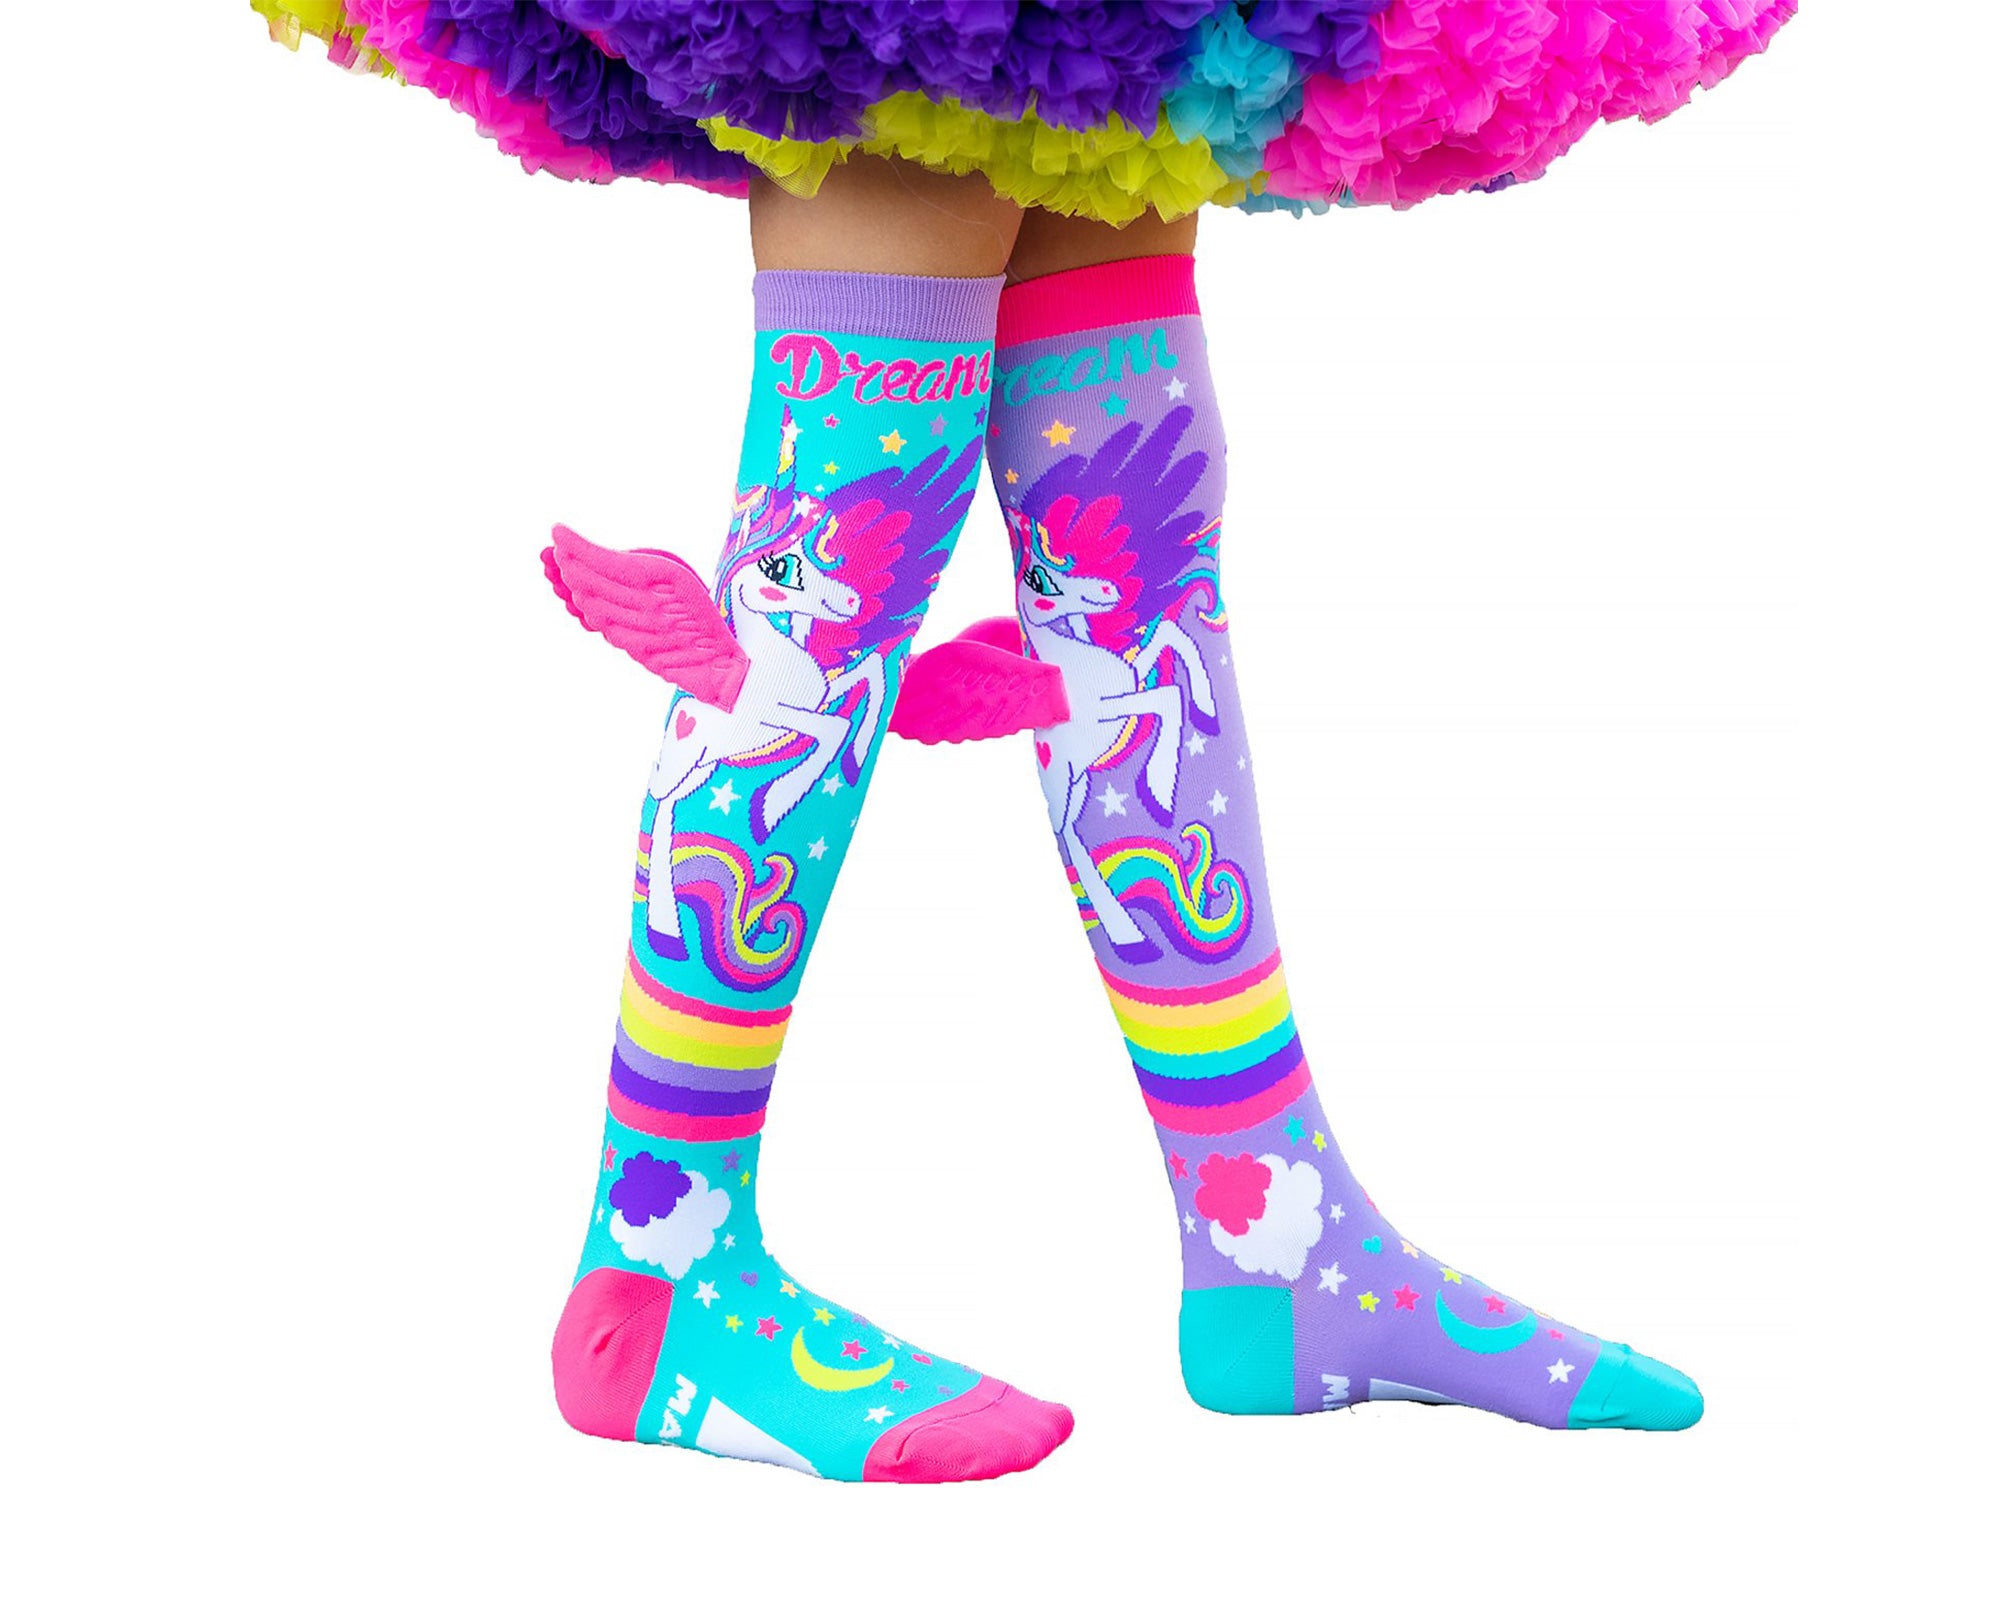 Les chaussettes pour enfants et adultes Mini Pony sont un favori instantané (ailes roses et beaucoup d'amour inclus). 